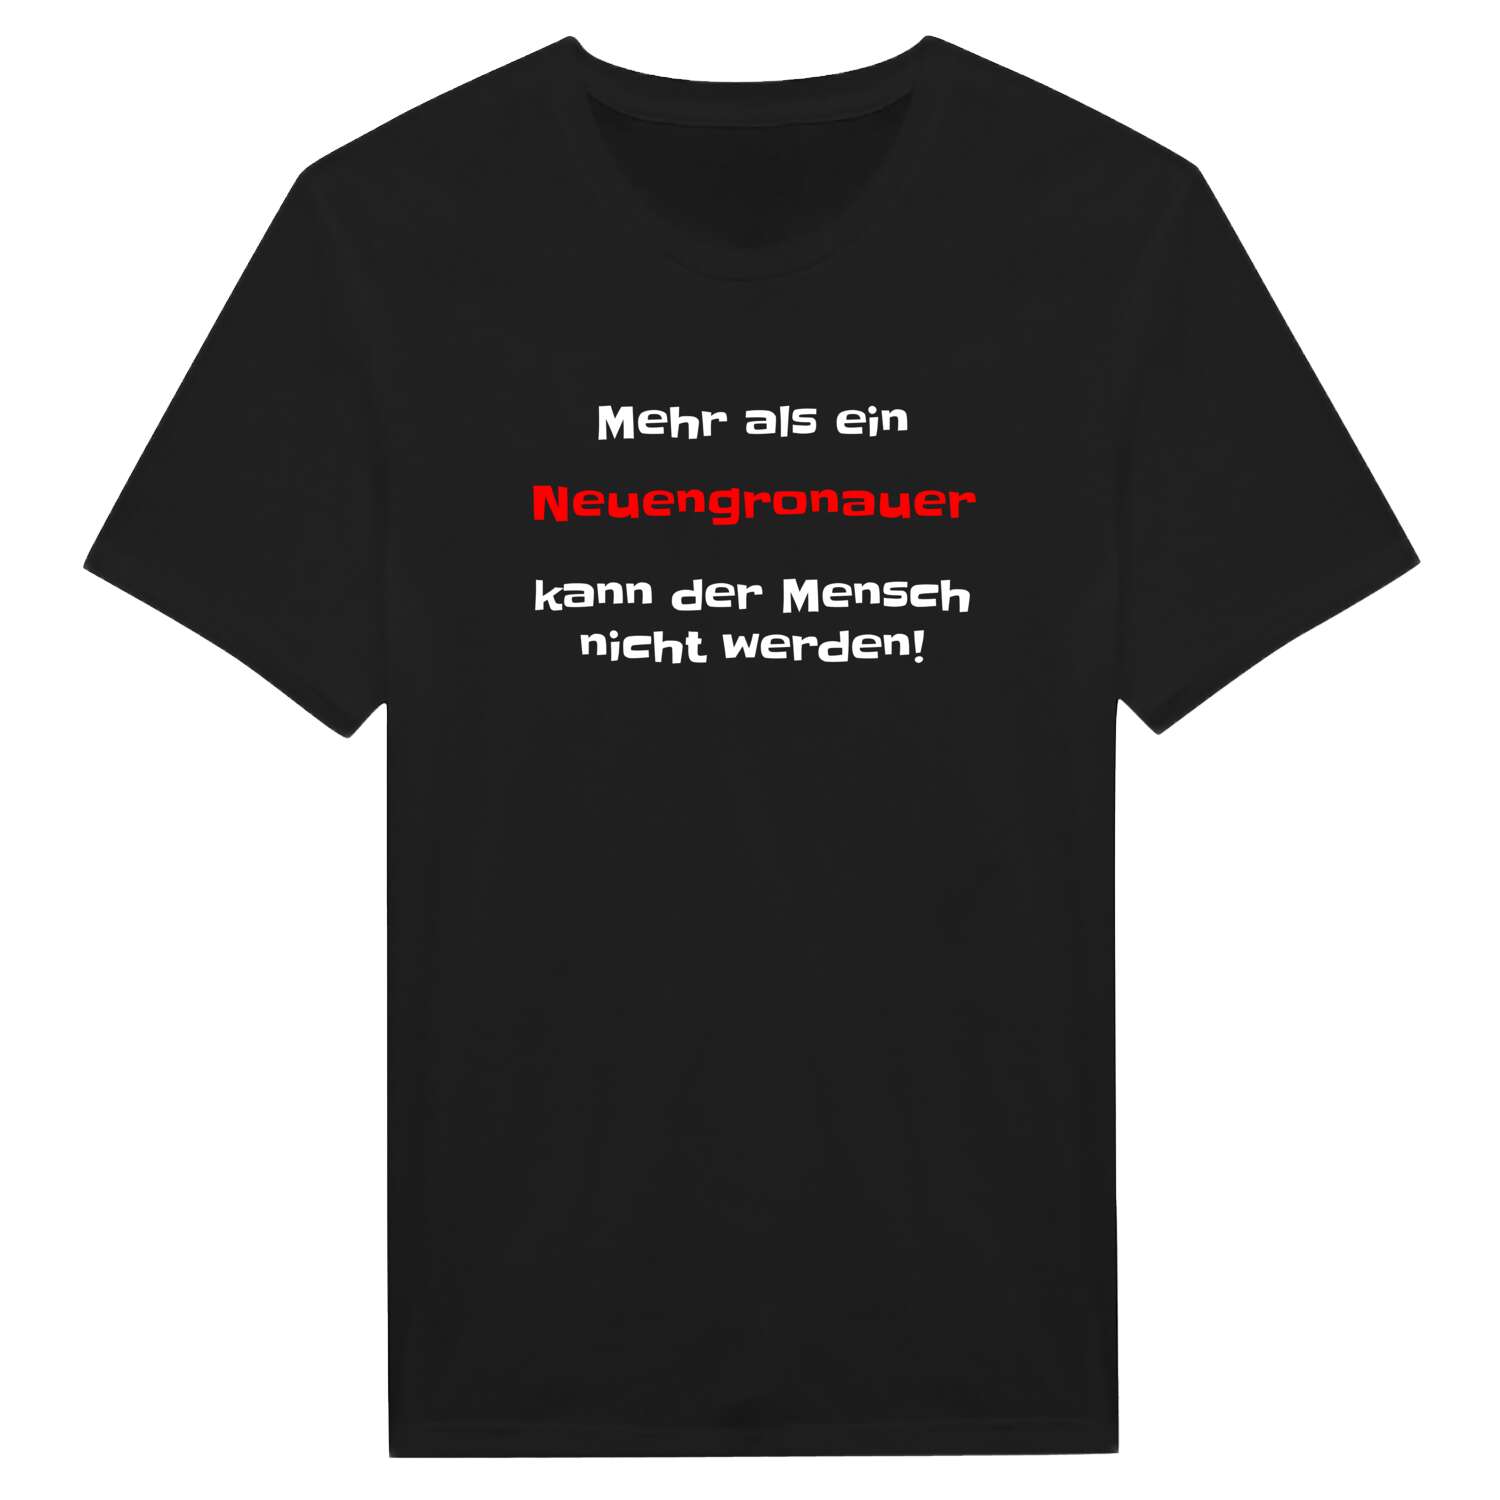 Neuengronau T-Shirt »Mehr als ein«